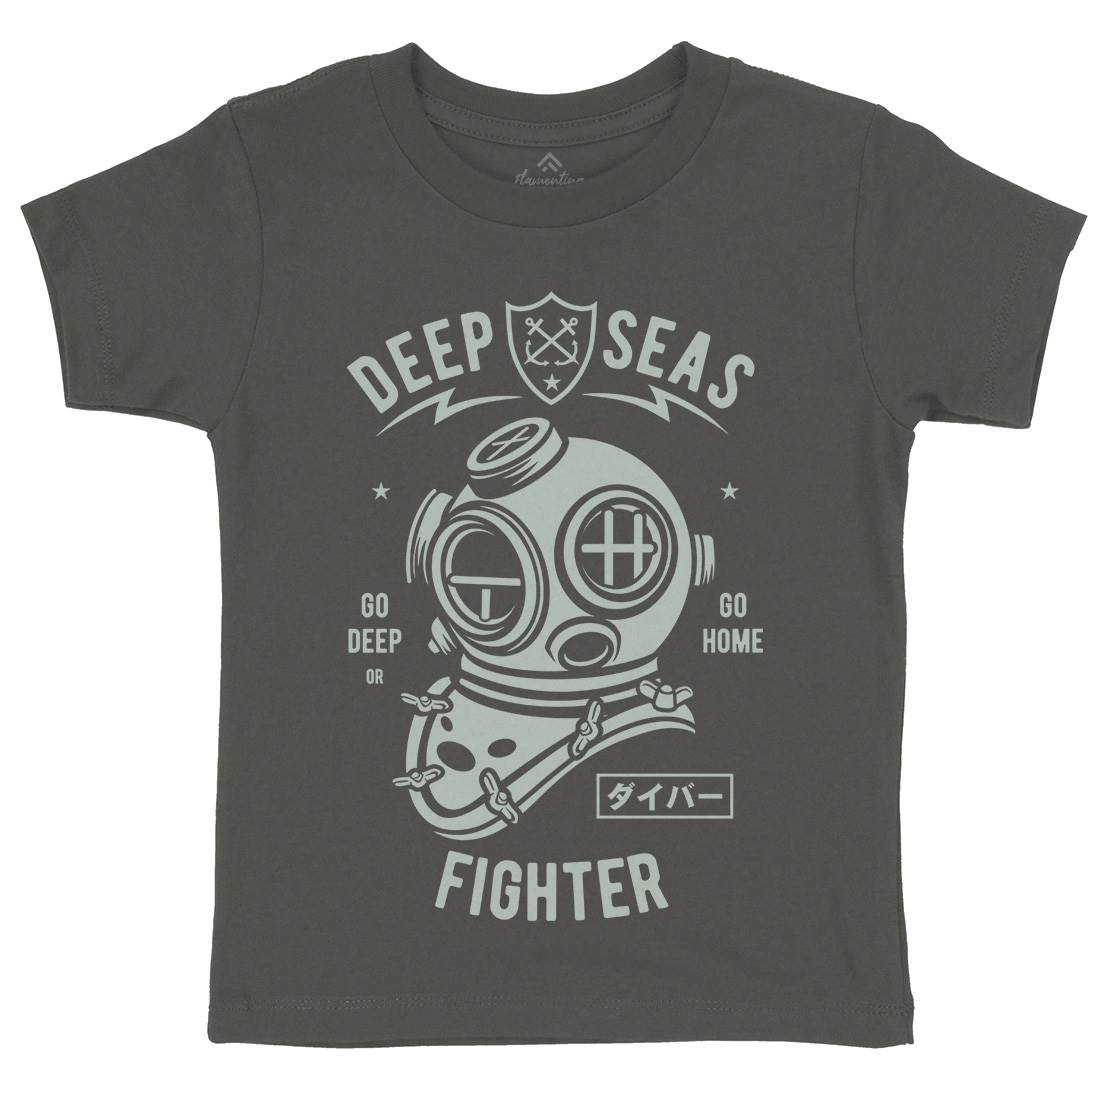 Deep Seas Fighter Kids Organic Crew Neck T-Shirt Navy A223